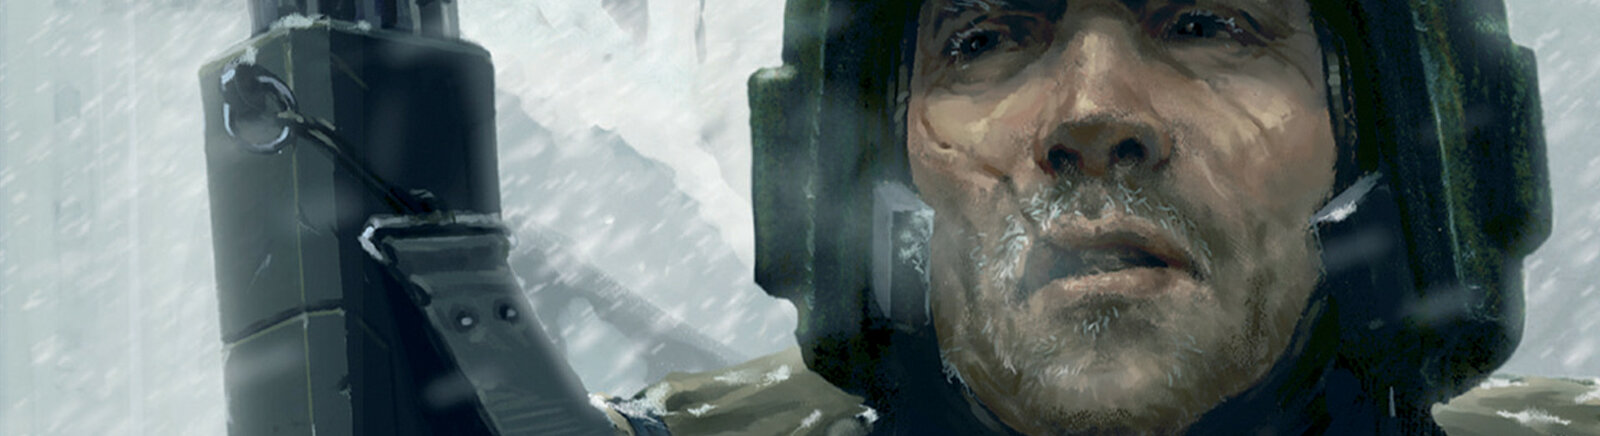 Дата выхода Warhammer 40,000: Dawn of War - Winter Assault  на PC в России и во всем мире